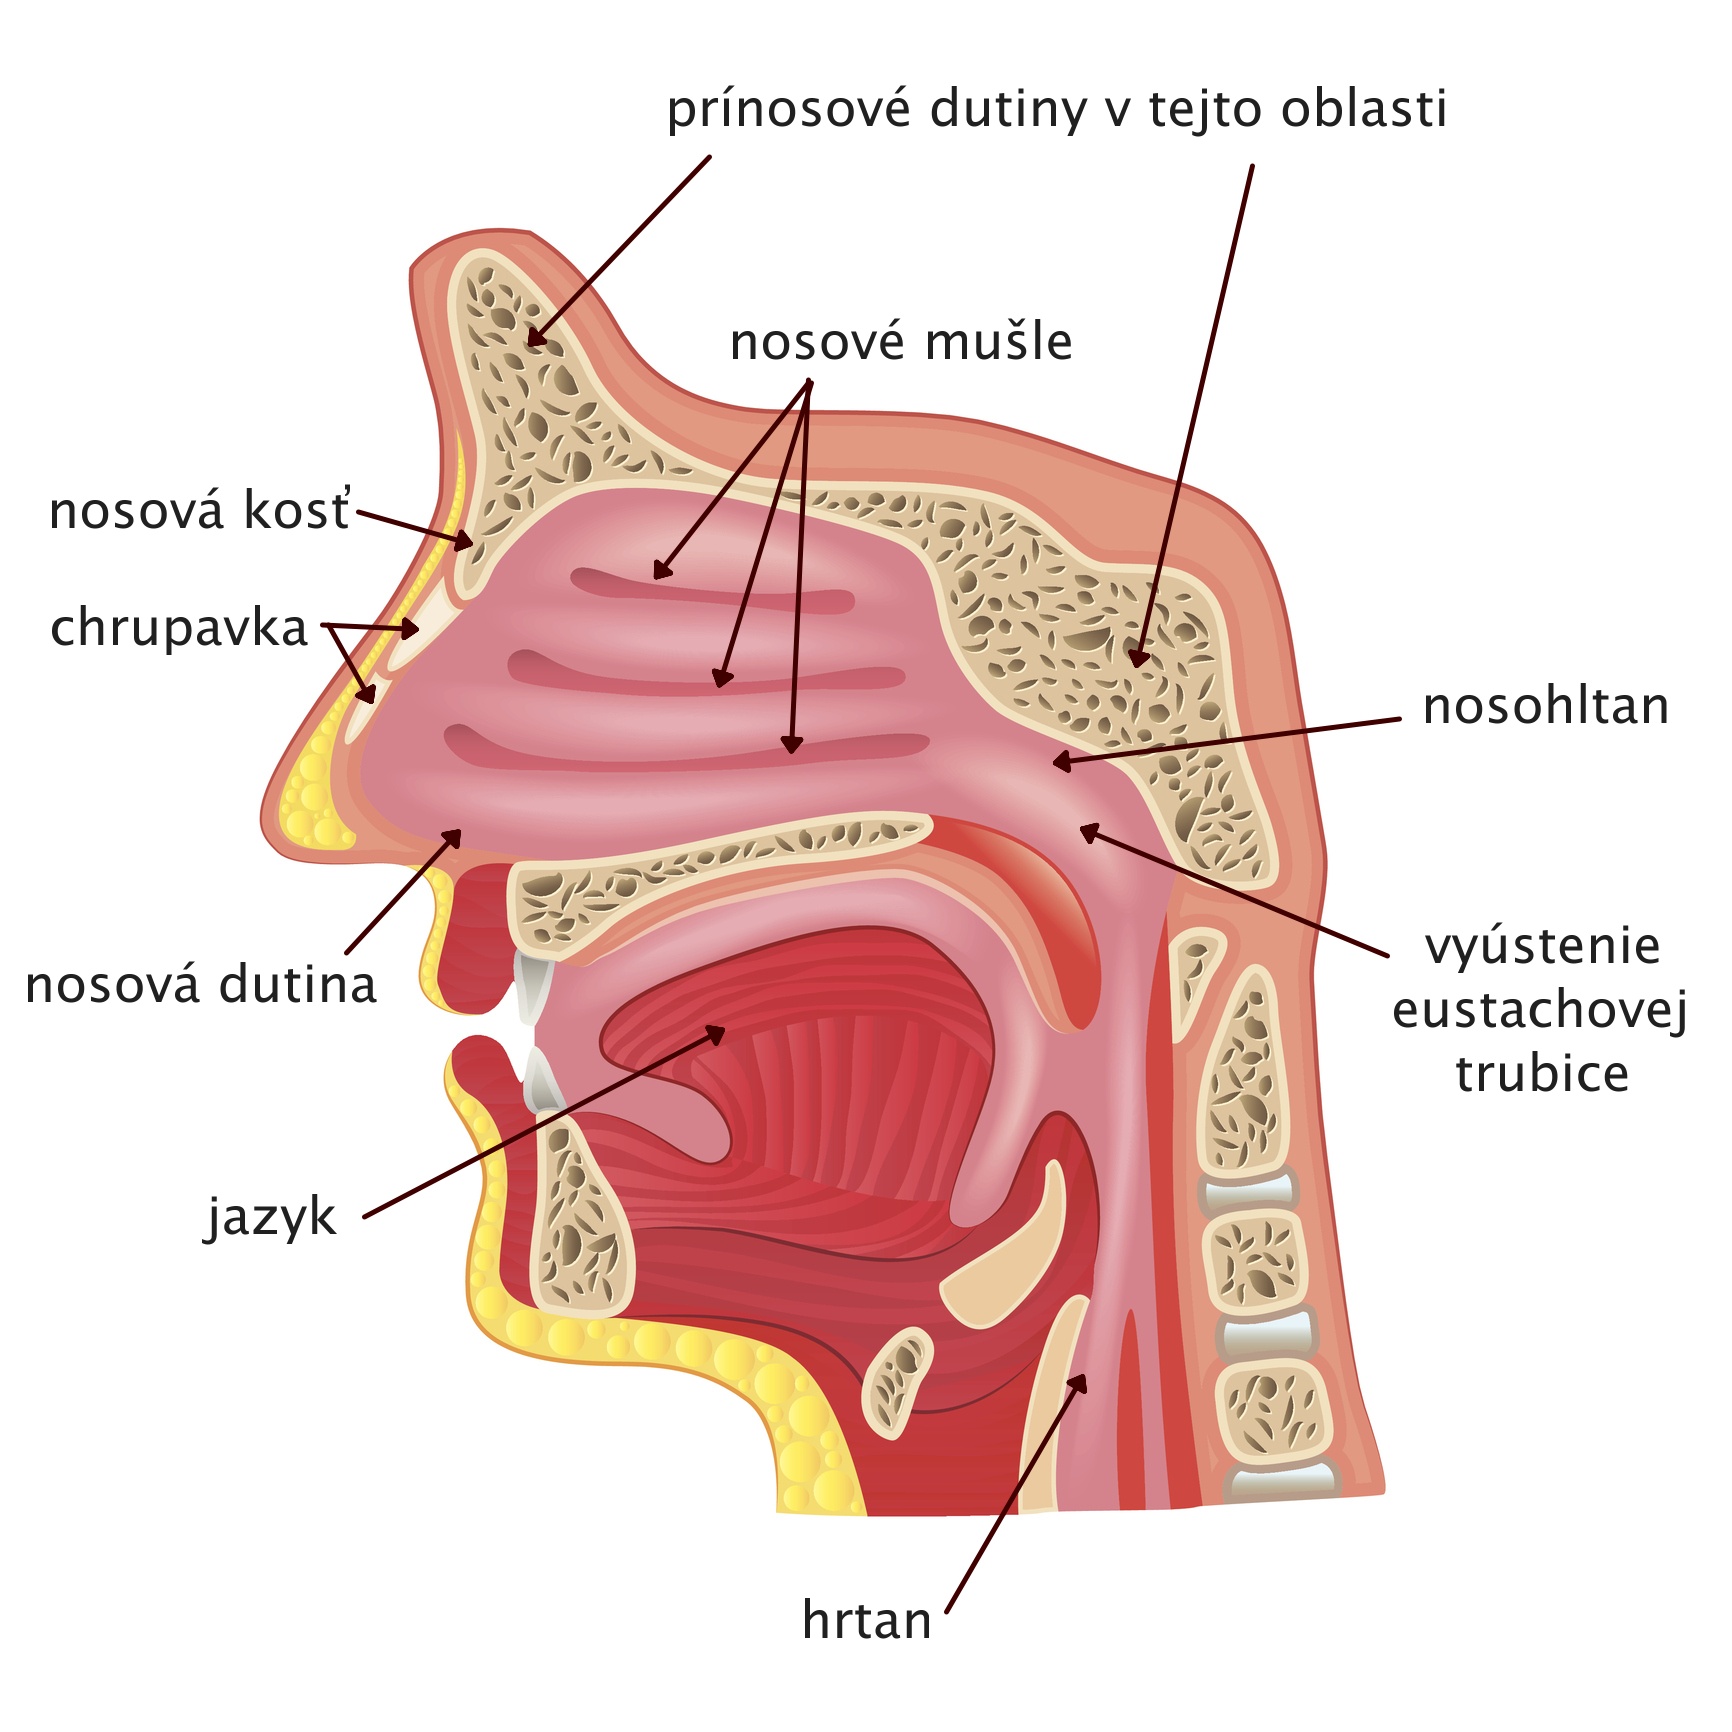 Anatómia nosu a nosovej dutiny